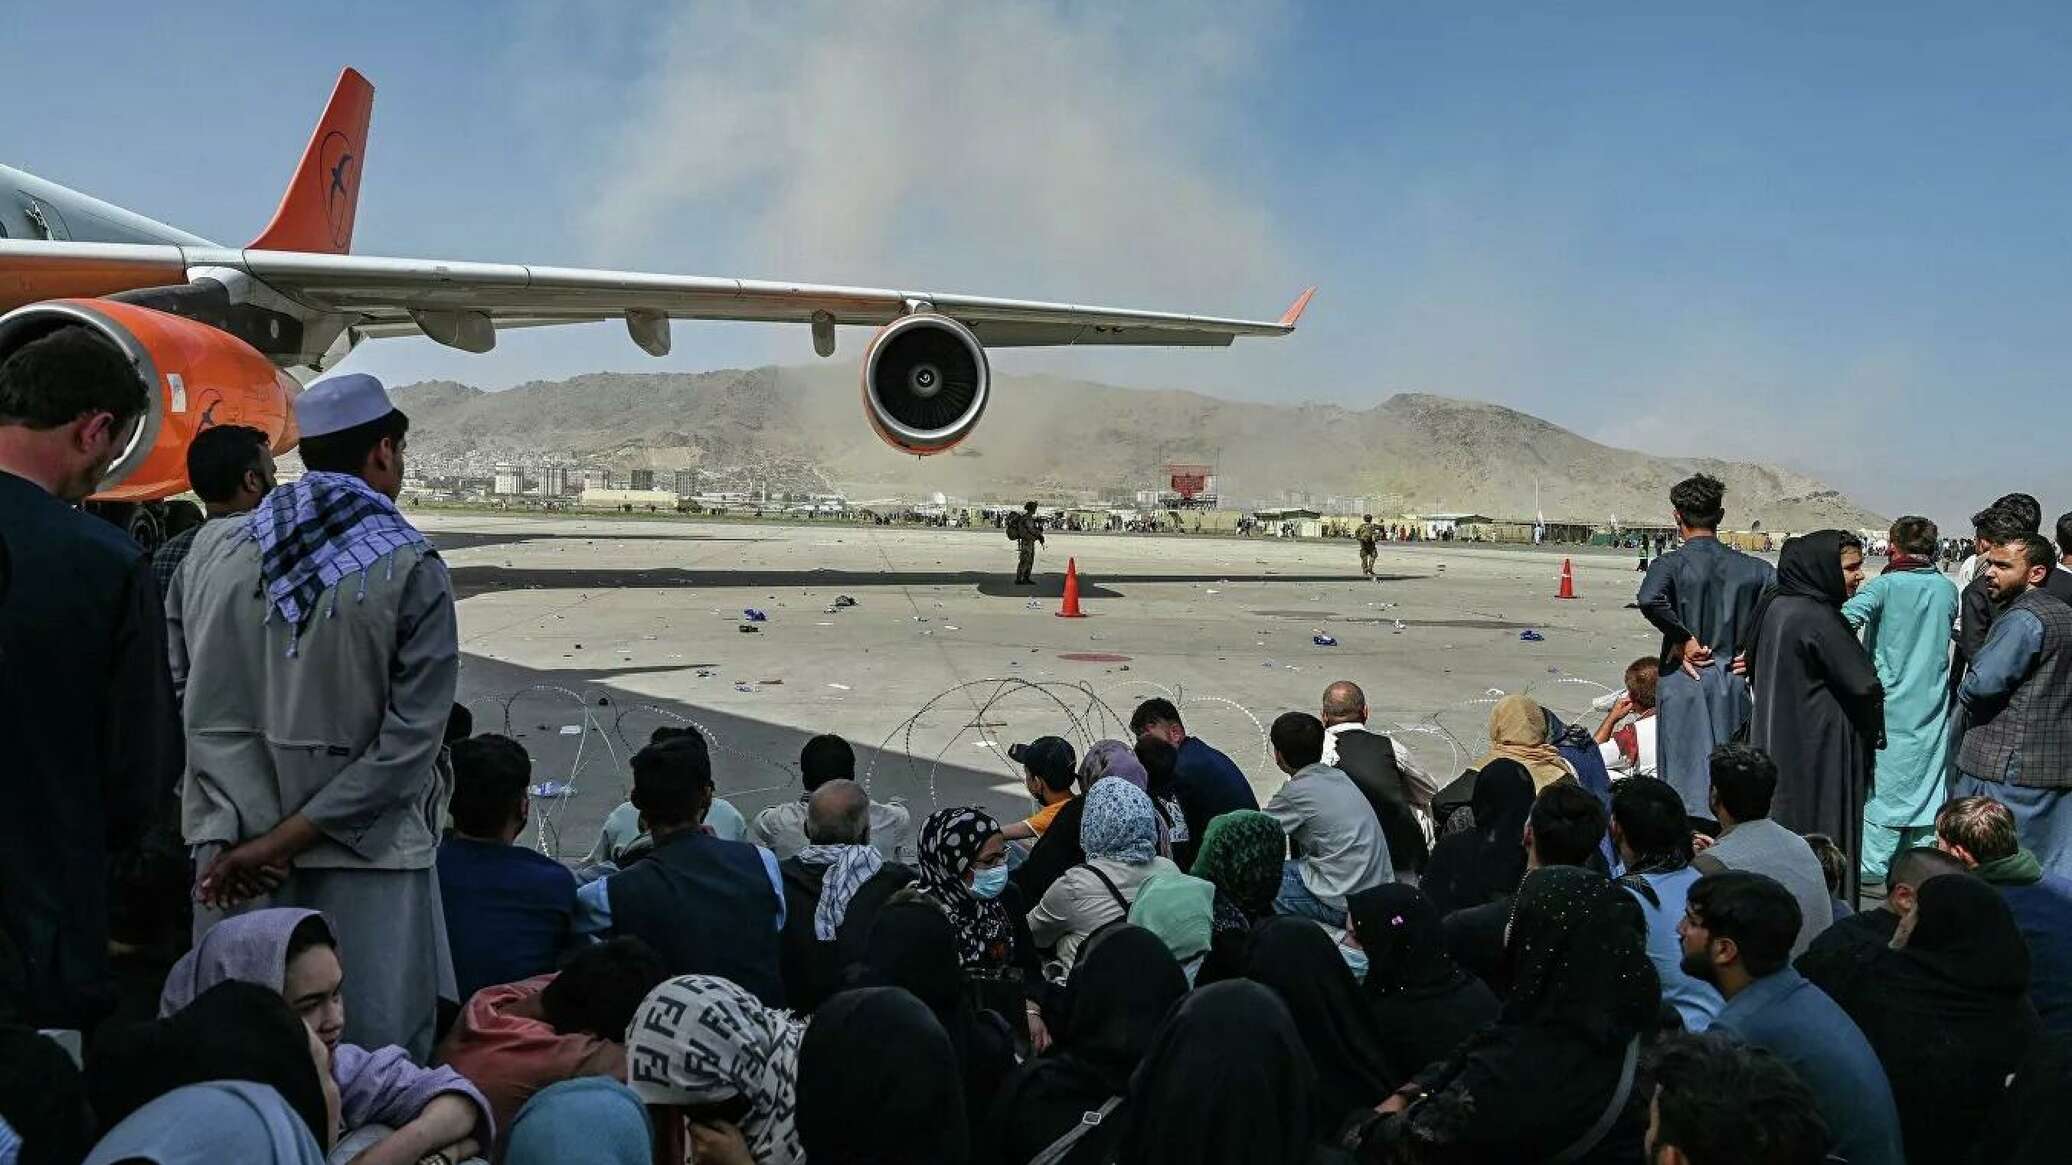 Біля аеропорту Кабула стався вибух: ЗМІ повідомляють про понад десяток загиблих і поранених